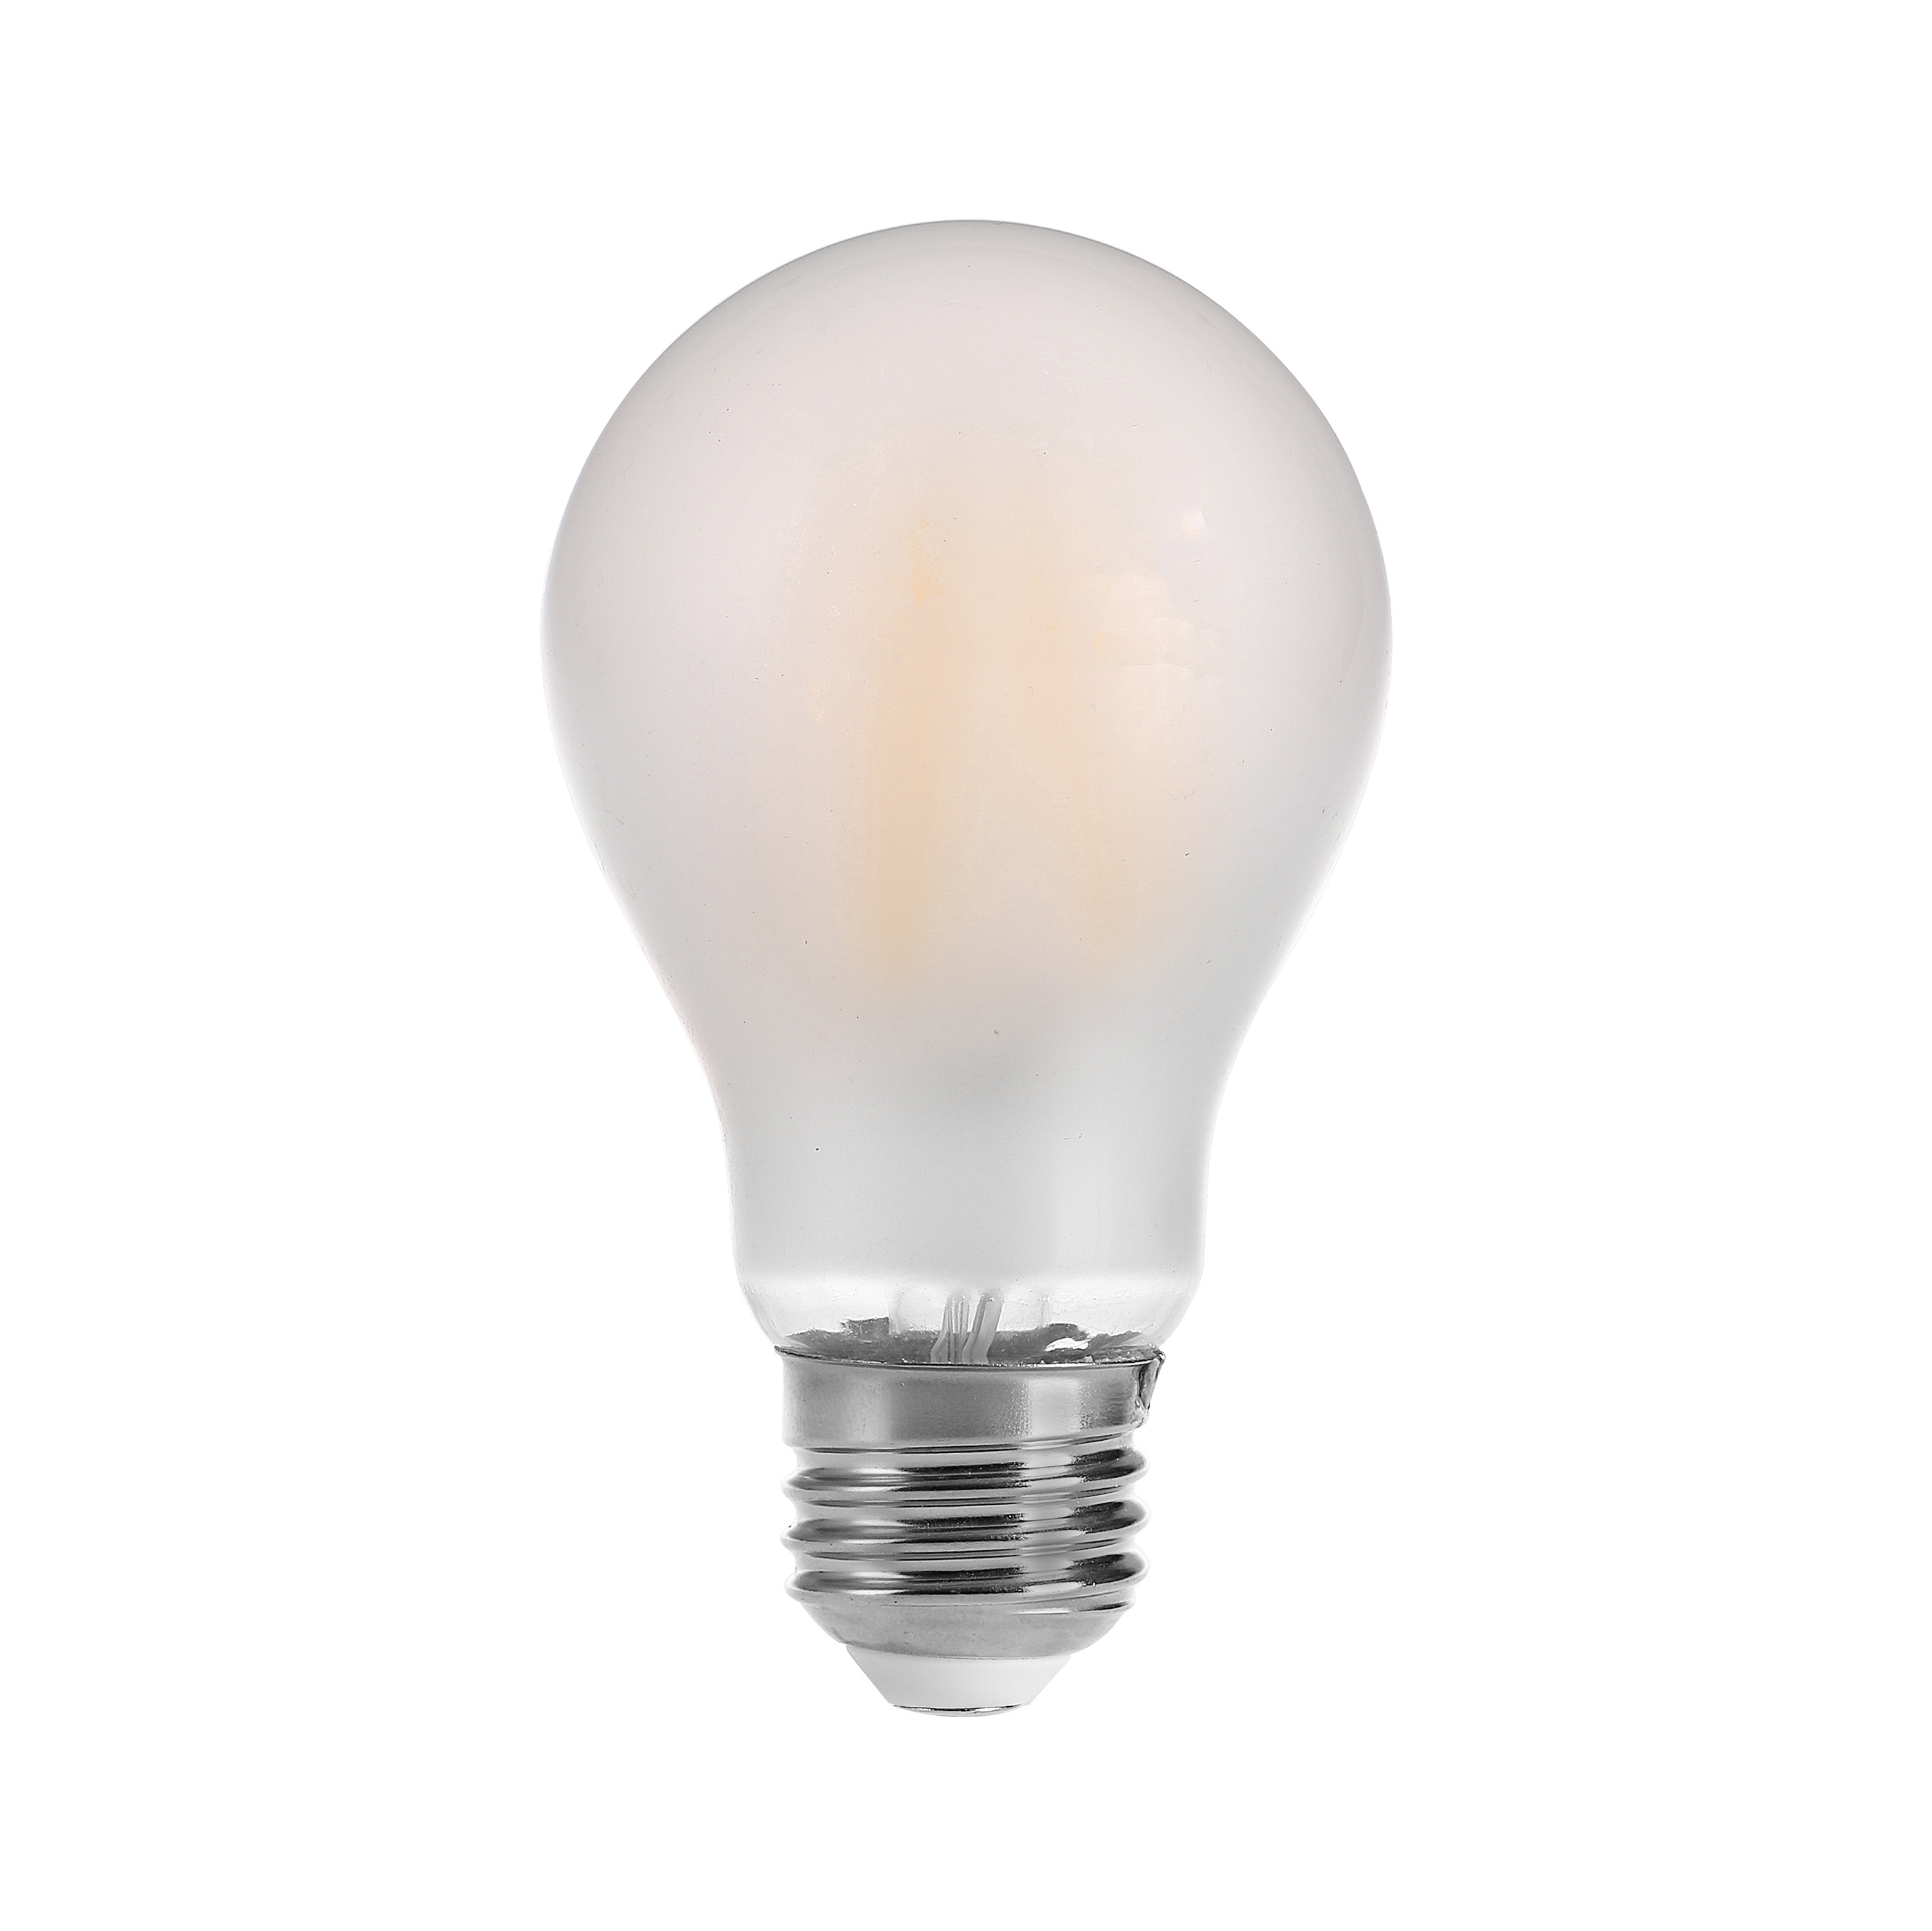 OEM-vintage glödlampor LED-lampor energibesparande, Dimmable LED Glödlampor, 360 graders strålningsvinkel LED-lampa